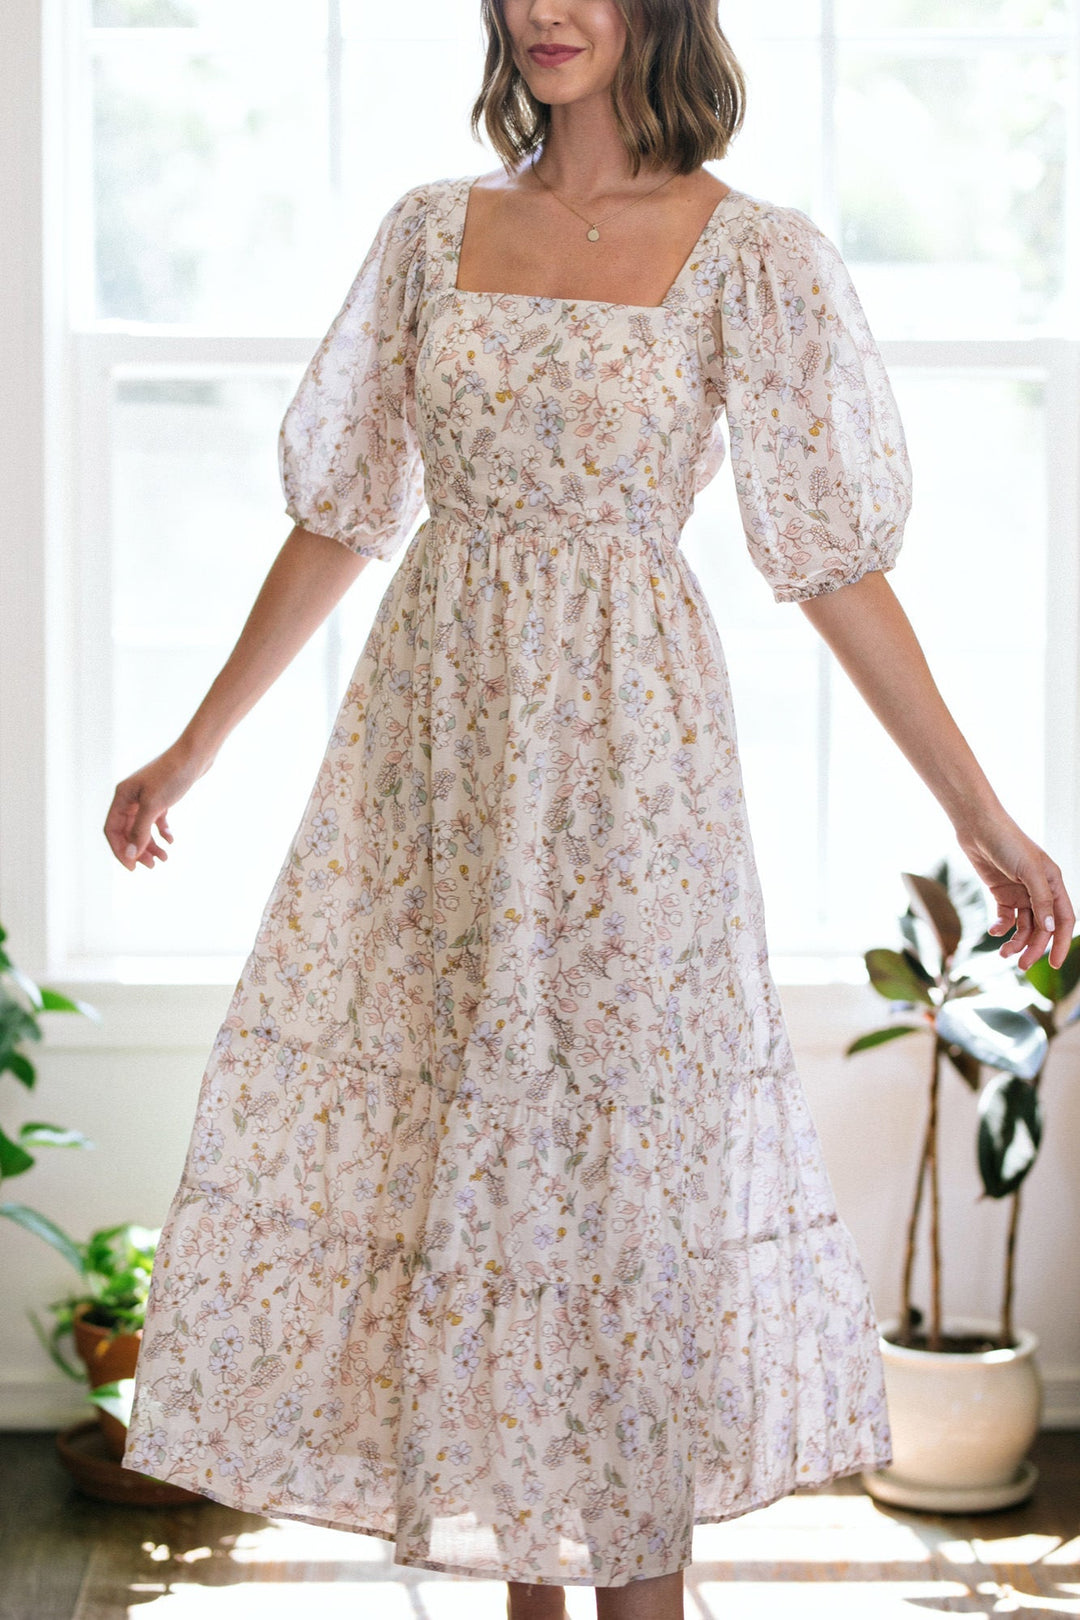 Caroline Floral Babydoll Dress Dresses Dress Forum 